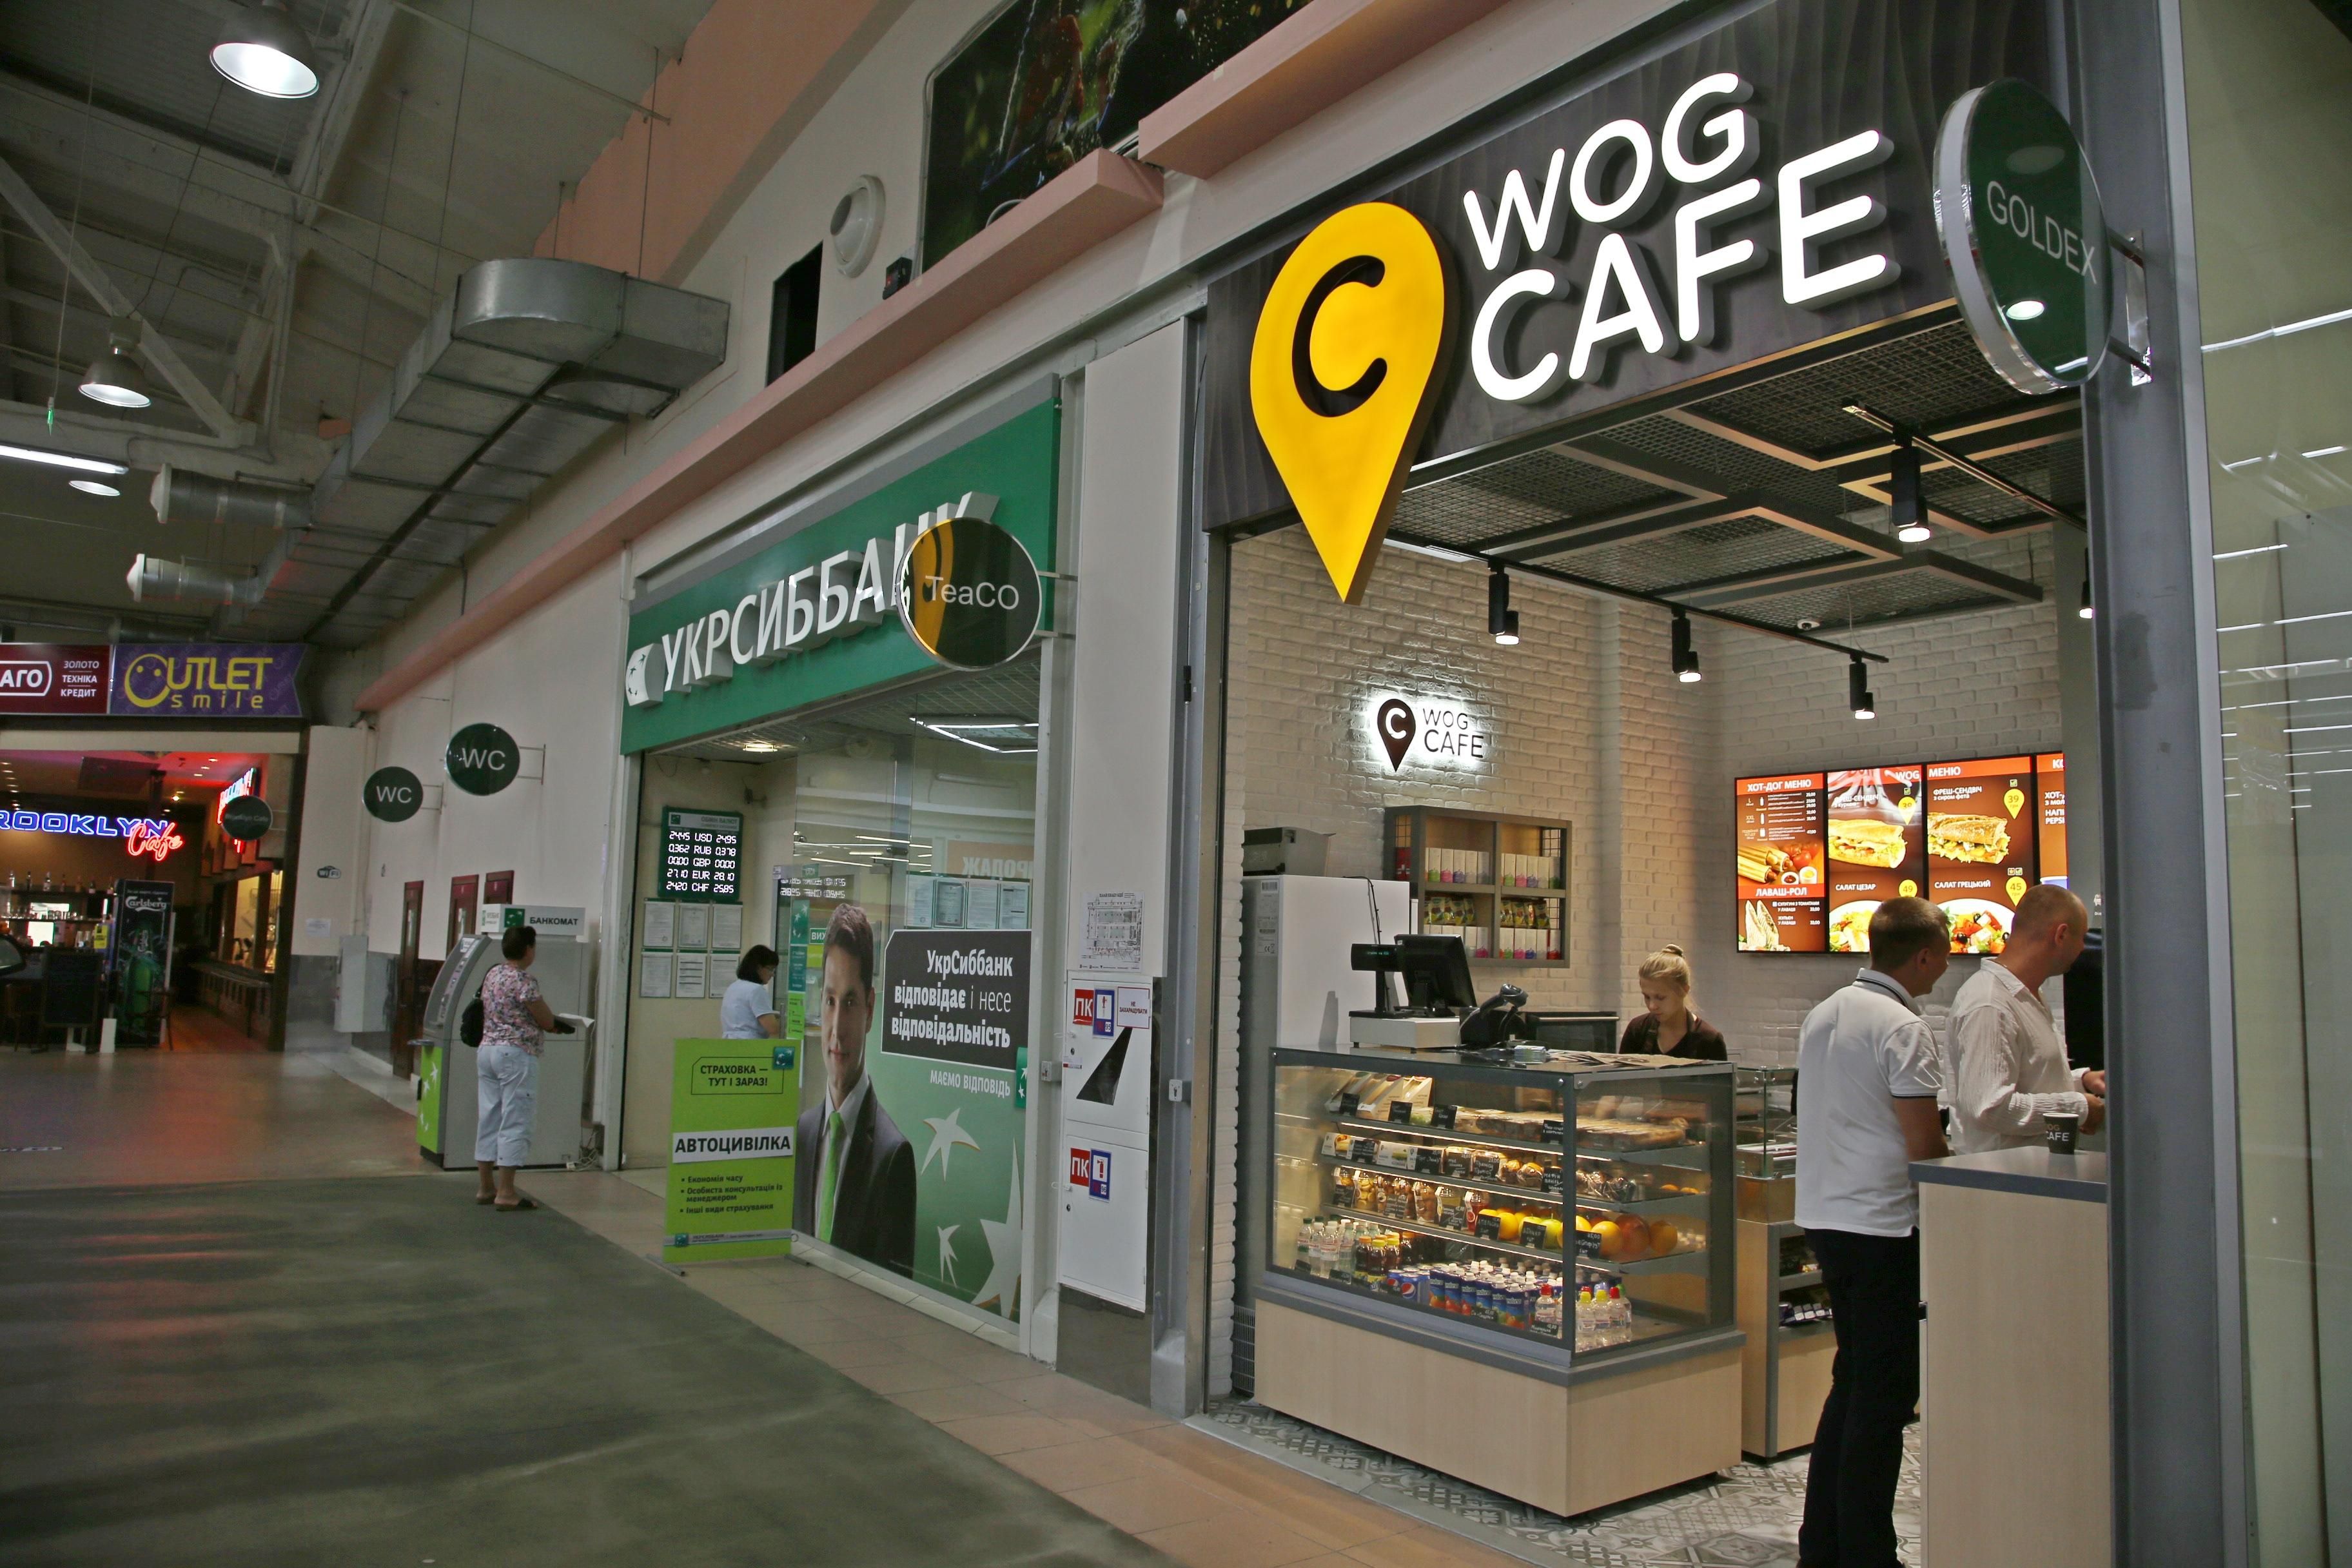 Кофейный бизнес WOG получил новый формат: компания открывает кофе-пойнты в ТЦ "АШАН" - 3 августа 2016 - Телеканал новин 24